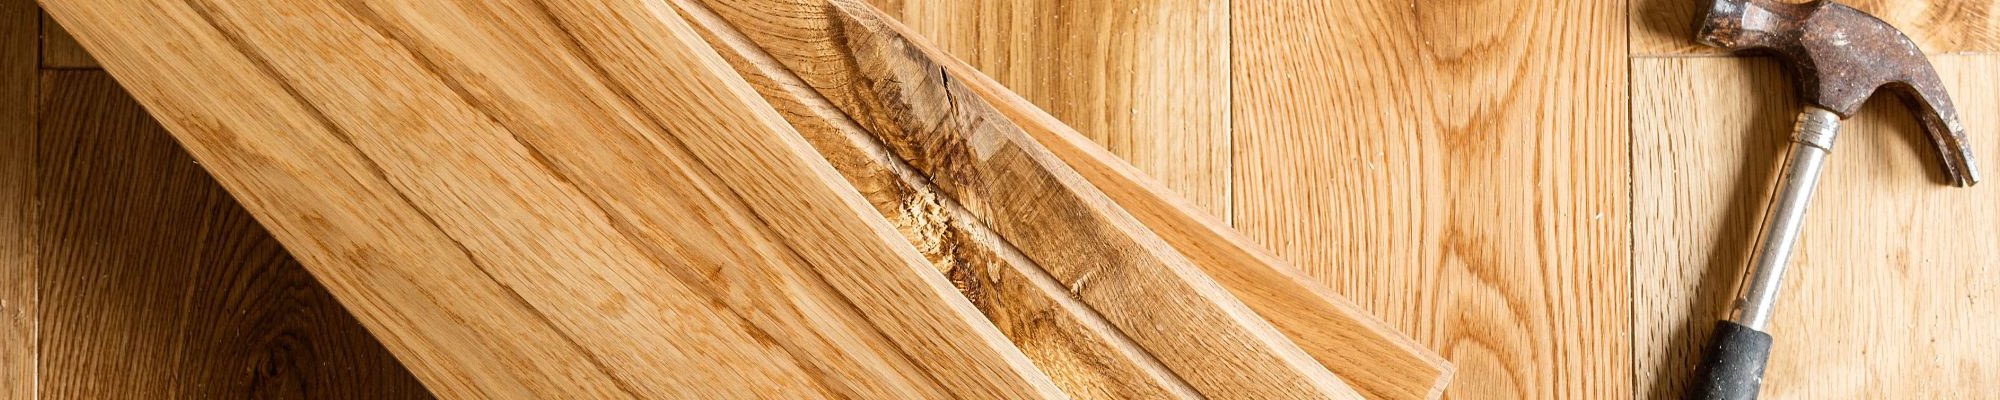 Hammer on hardwood planks- Carpet lover plus in MA